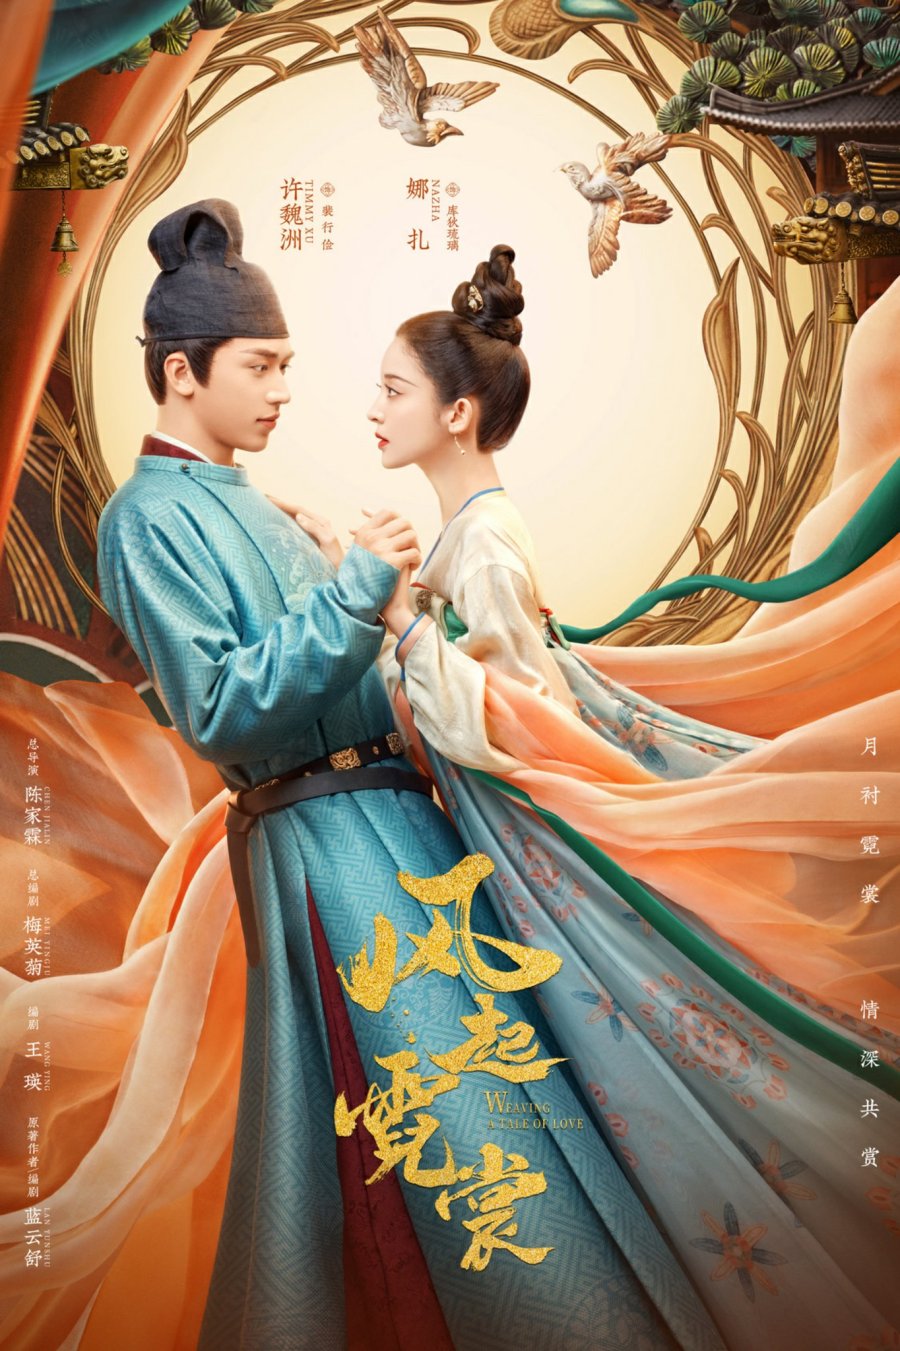 ดูหนังออนไลน์ Weaving a Tale of Love (2021) แสงจันทราแห่งราชวงศ์ถัง พากย์ไทย (จบ)